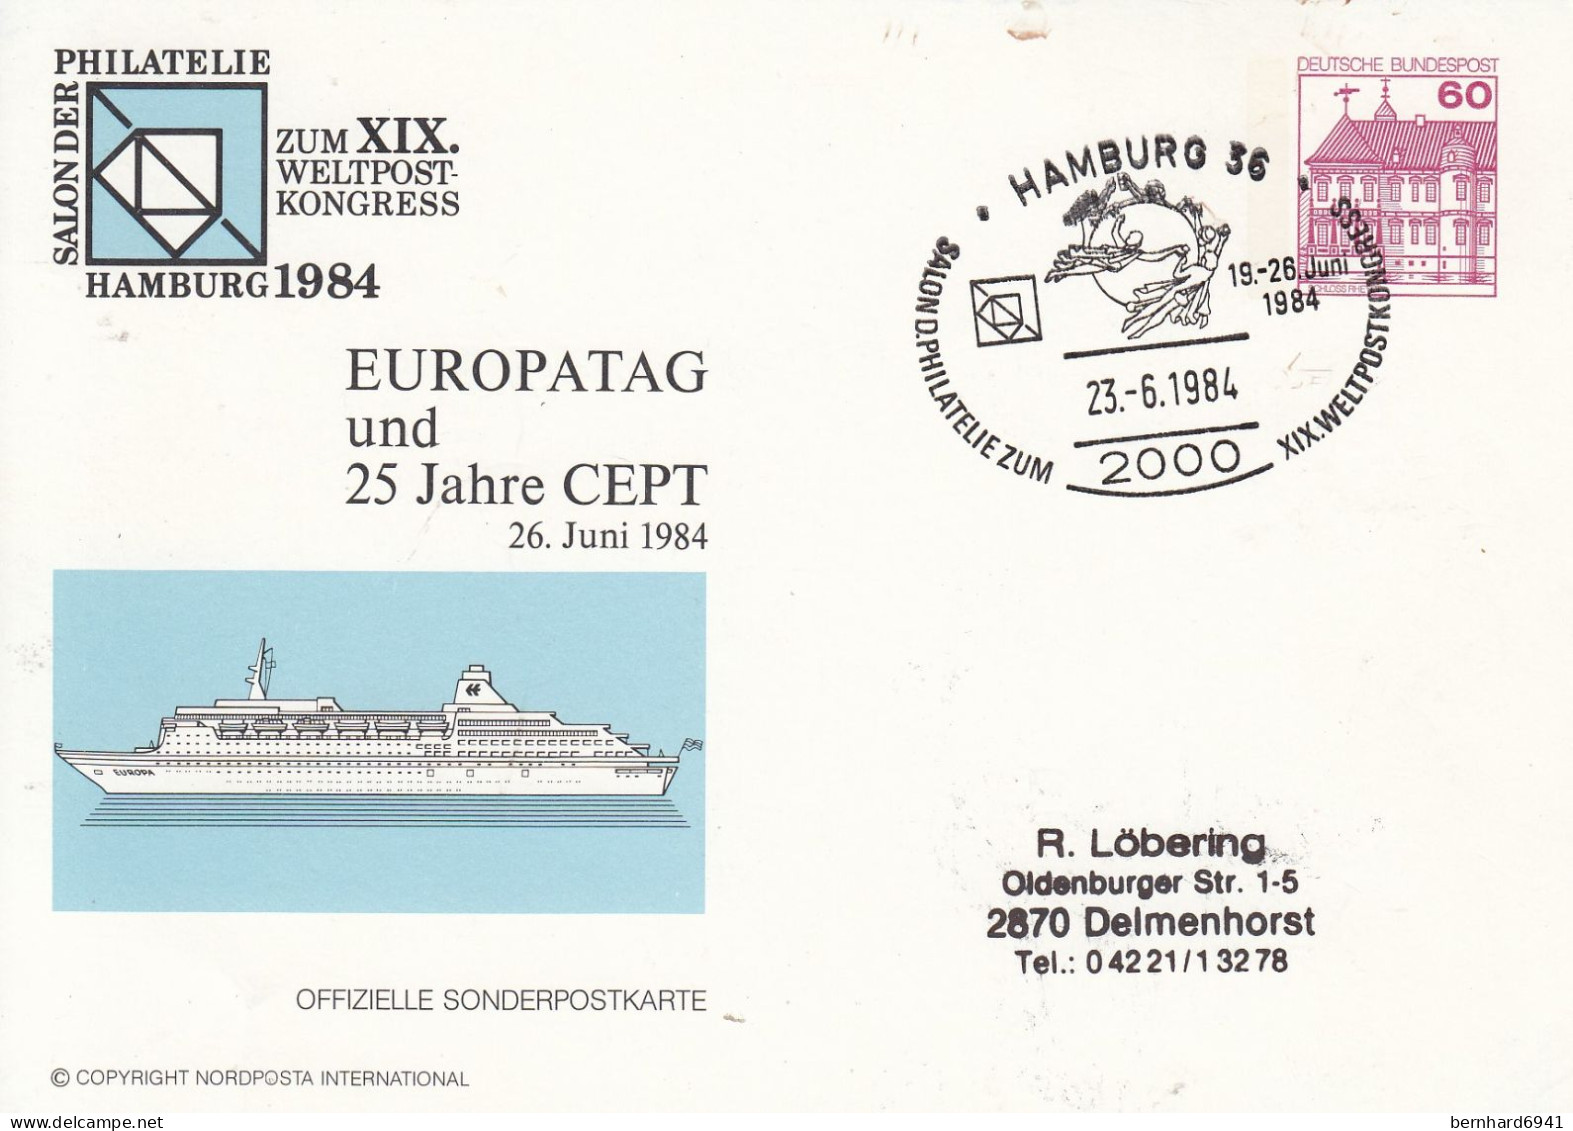 PP 106/143aSalon Der Philatelie Hamburg 1984 - EUROPATAG Und 25 Jahre CEPT, Hamburg 36 - Private Postcards - Used